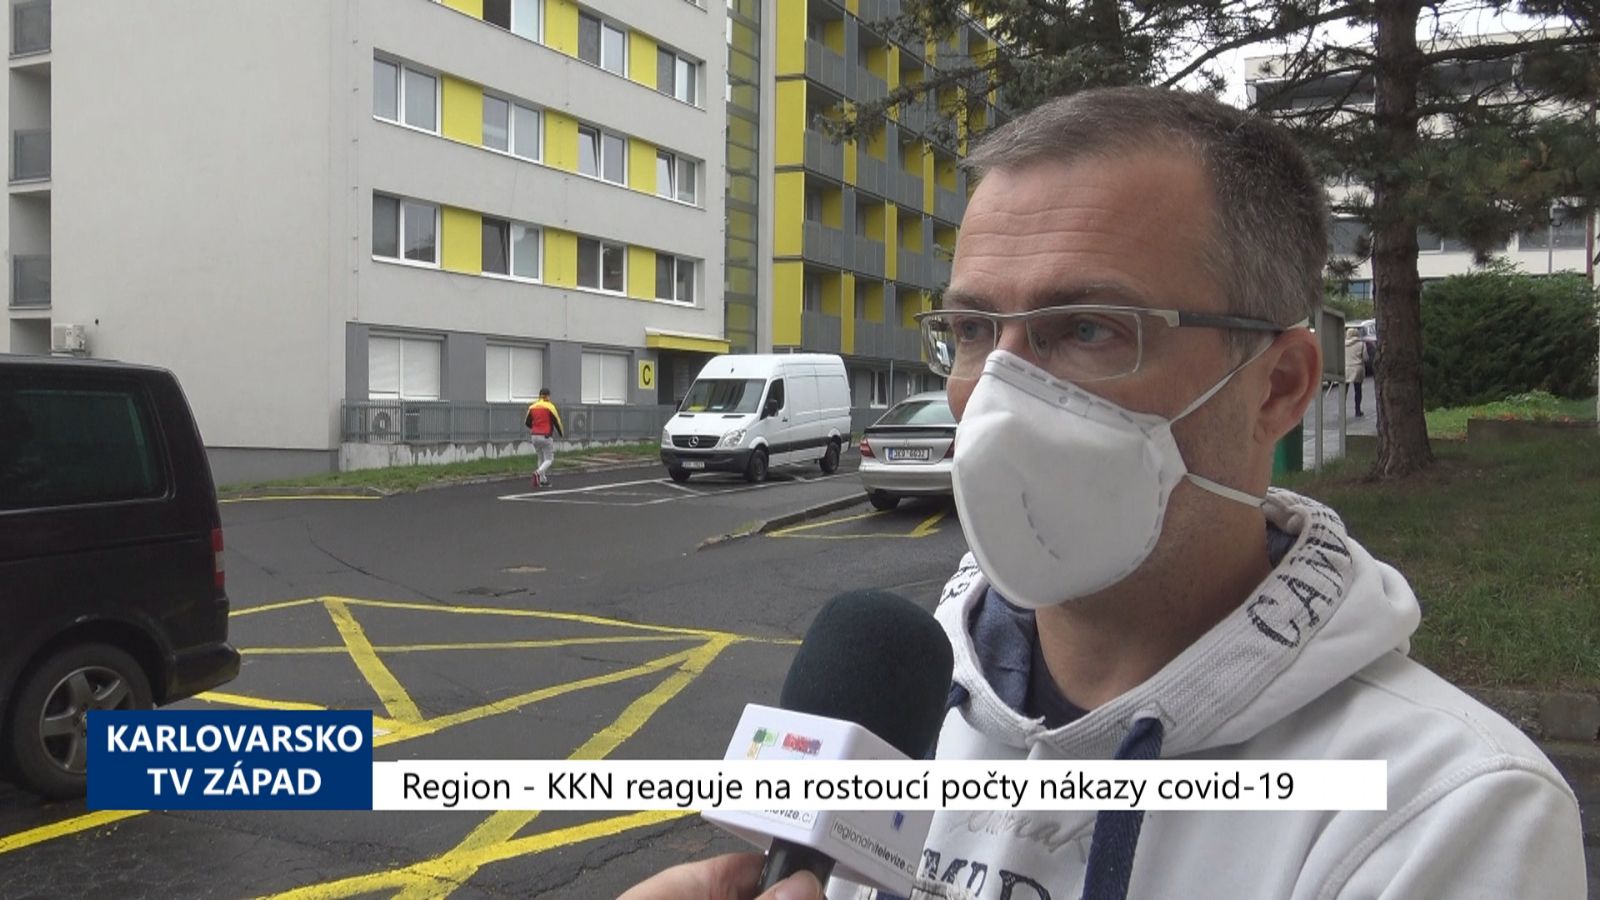 Region: KKN reaguje na rostoucí počty nákazy covid-19 (TV Západ)